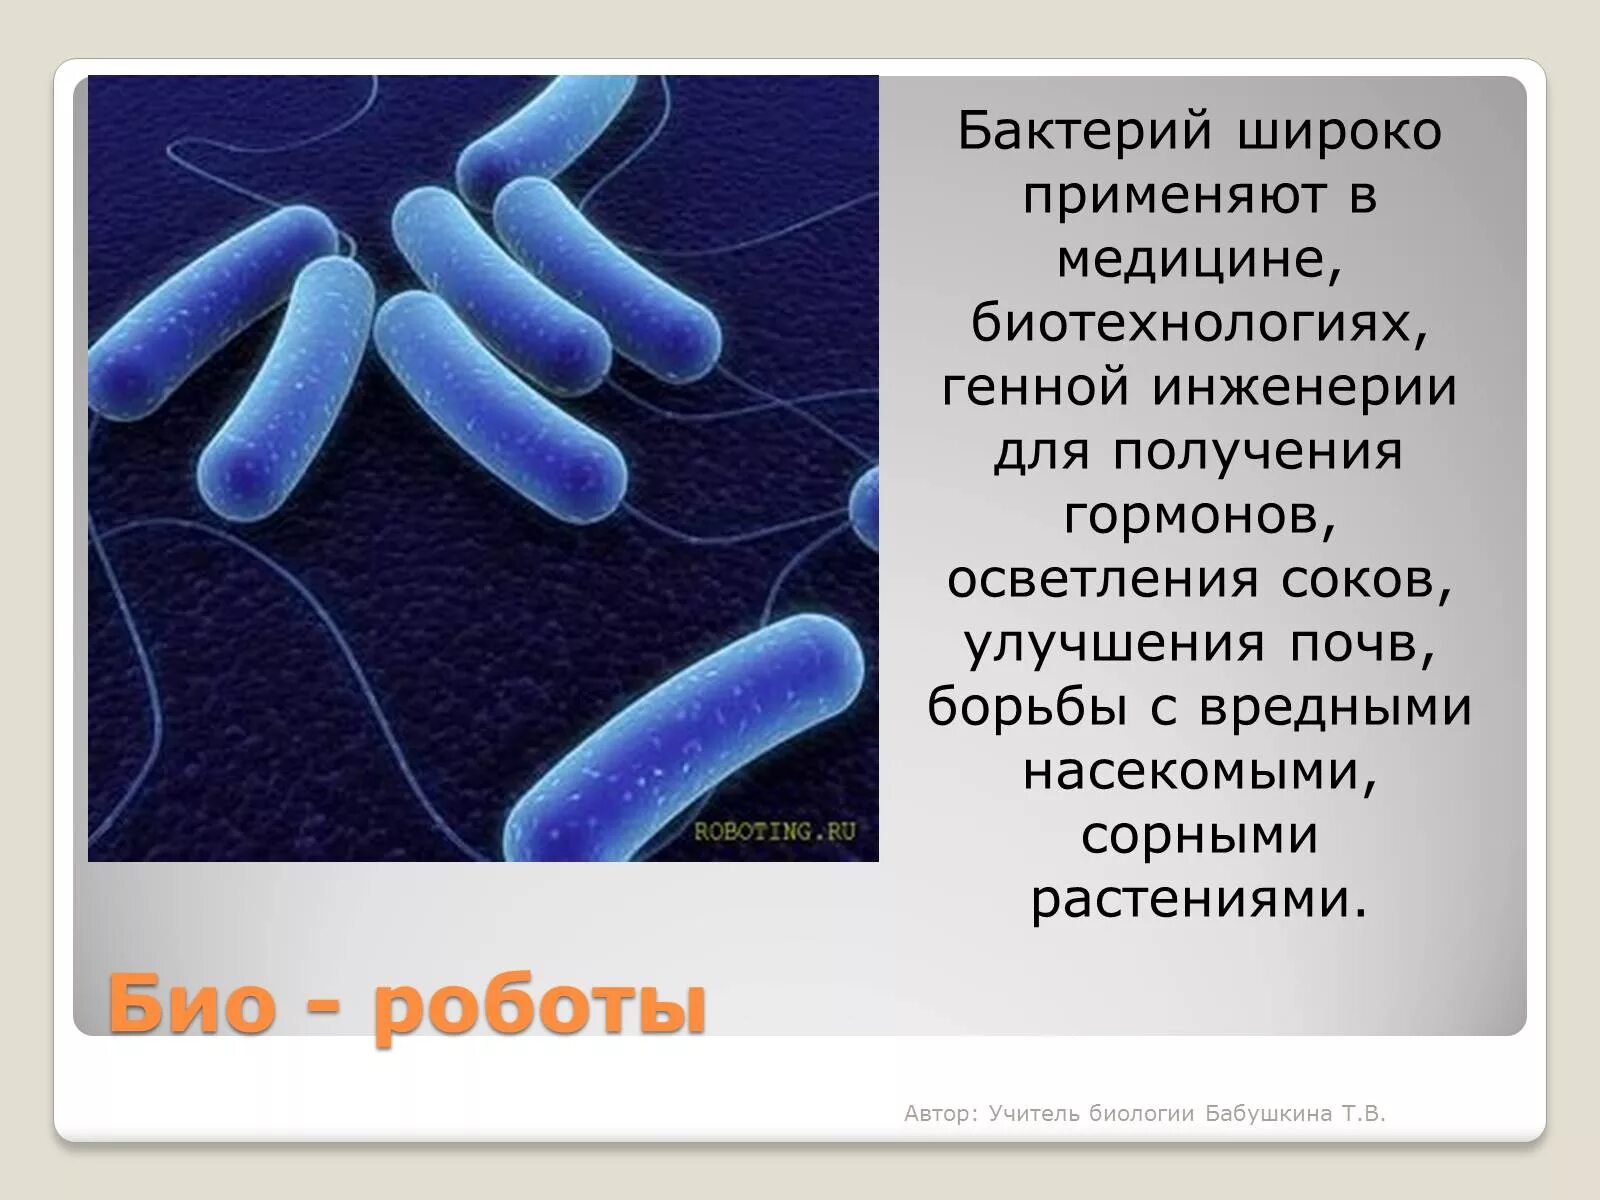 Микроорганизмы применяемые в МИКРОБИОТЕХНОЛОГИИ. Бактерии в биотехнологии. Бактерии и вирусы в биотехнологиях. Бактерии используемые в биотехнологии. Почему бактерии считают